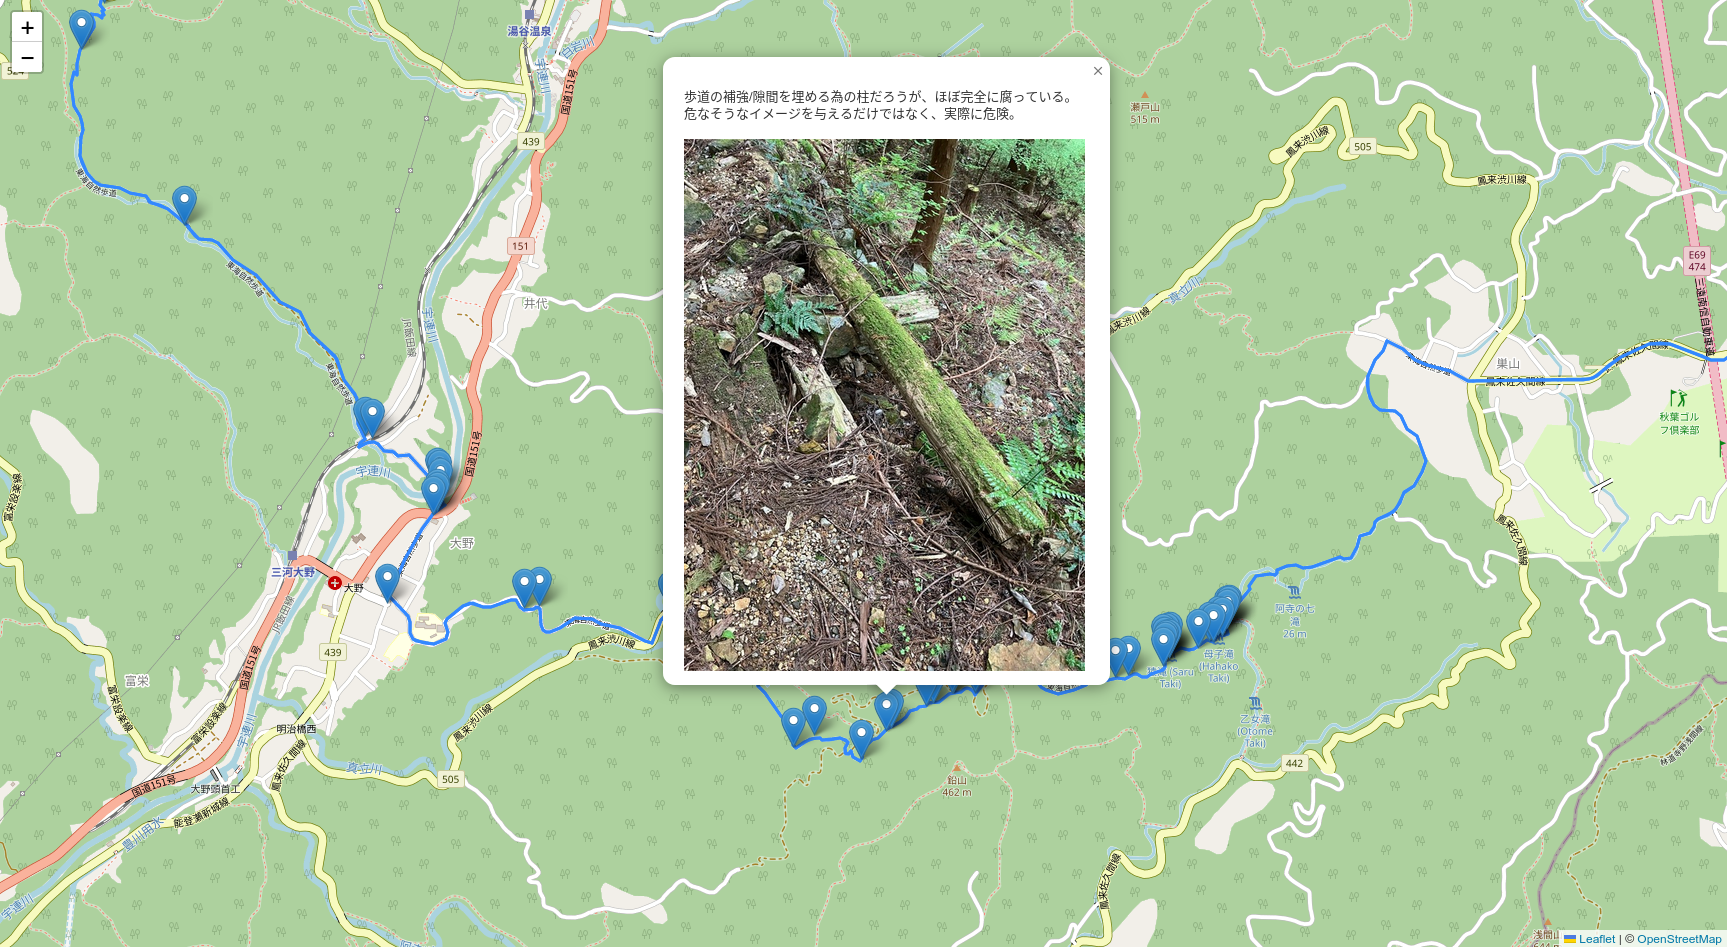 An example of the Tokai Shizen Hodo map